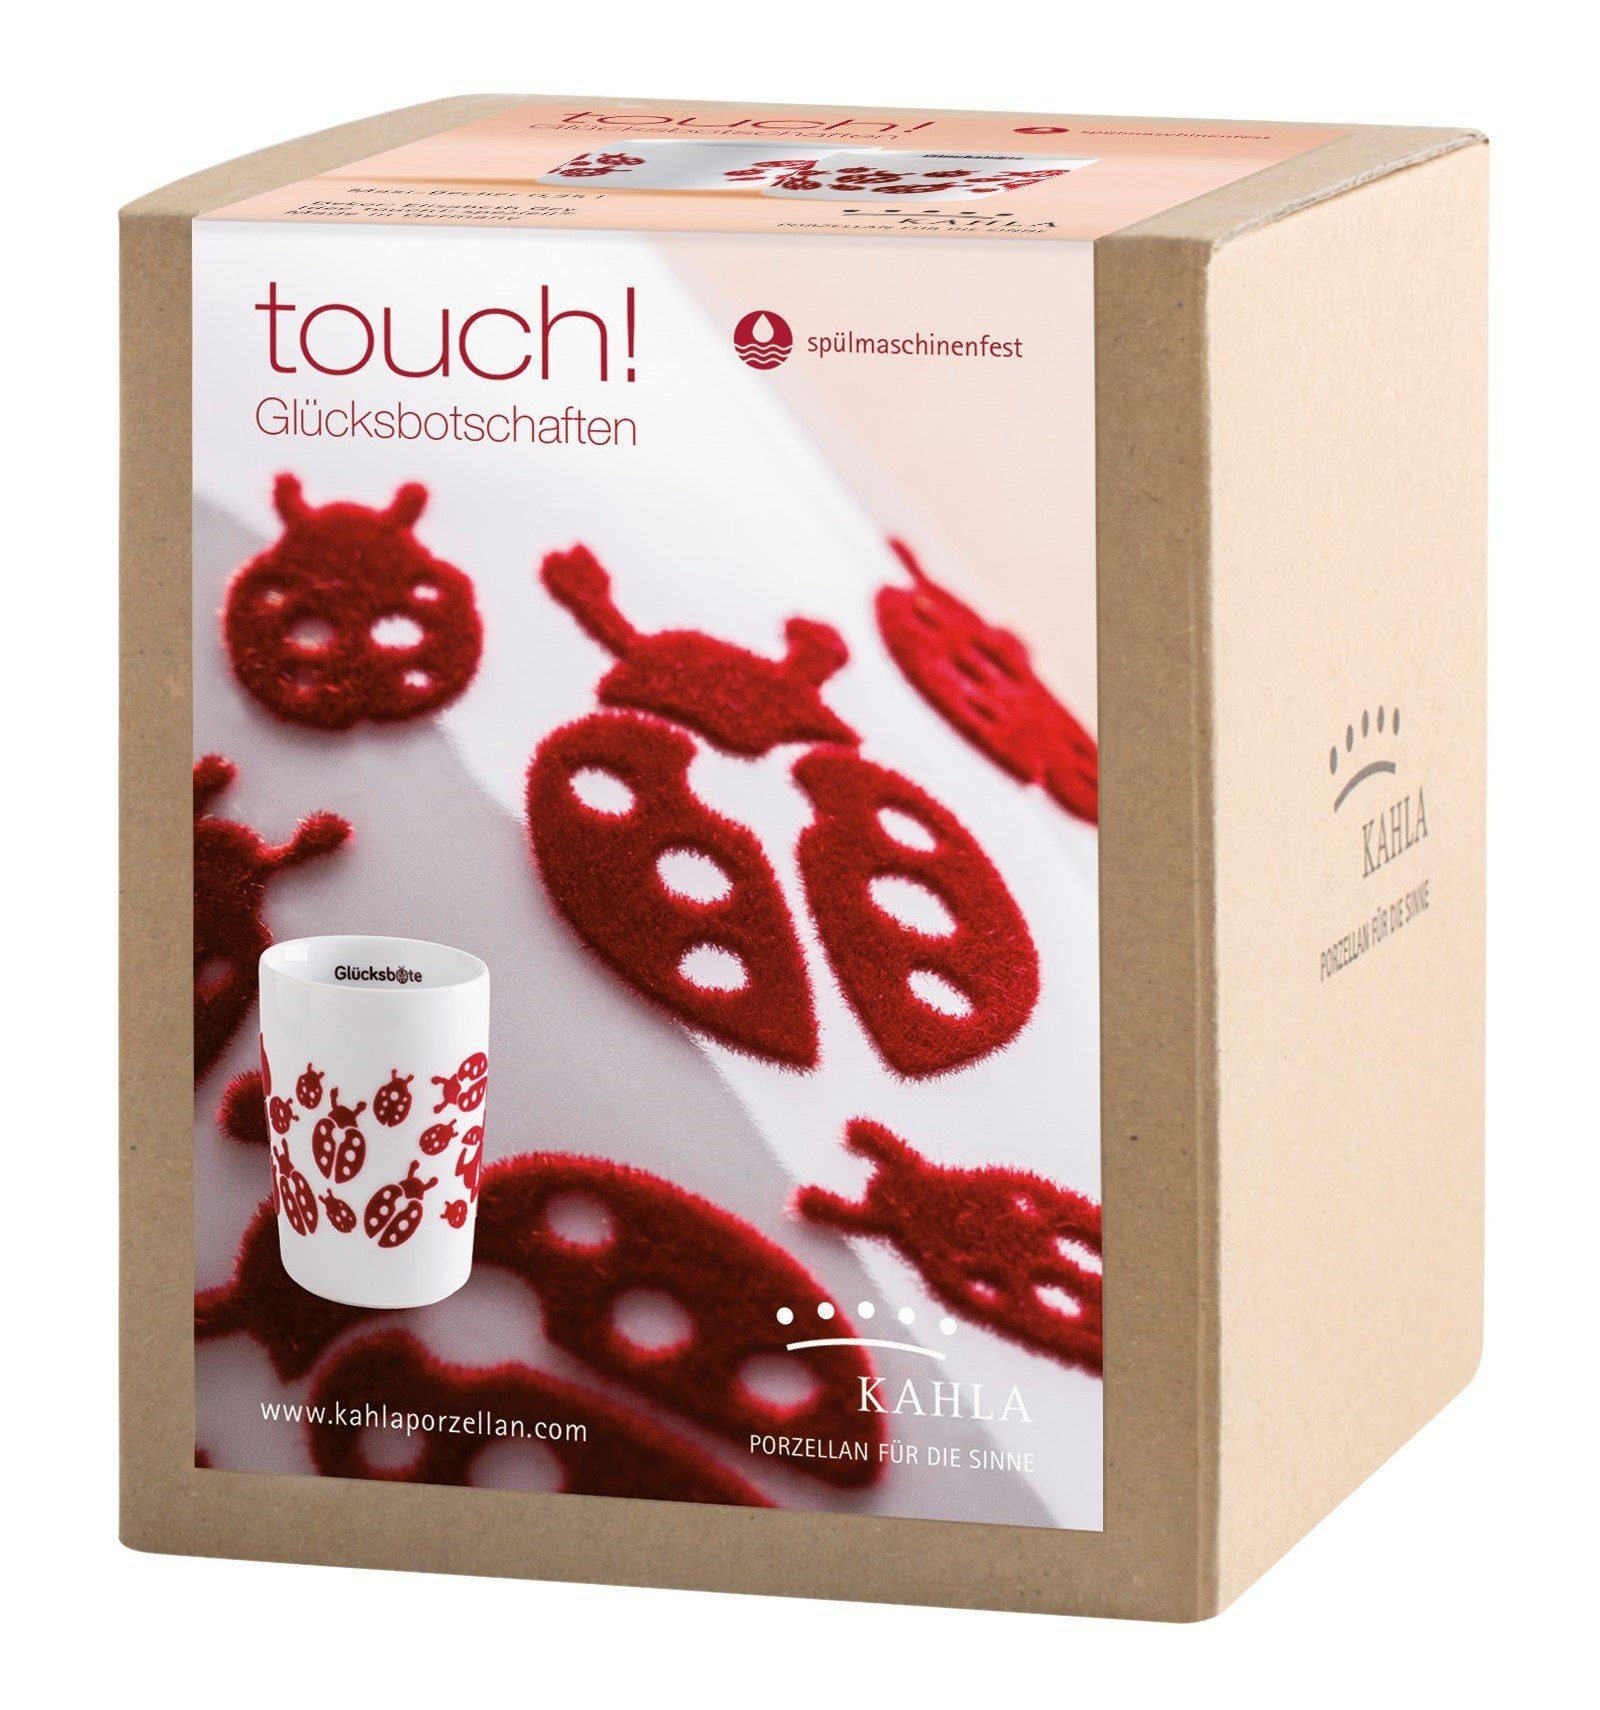 Kahla Becher touch! in Porzellan, l, Rot Made Glücksbotschafter Germany 0,35